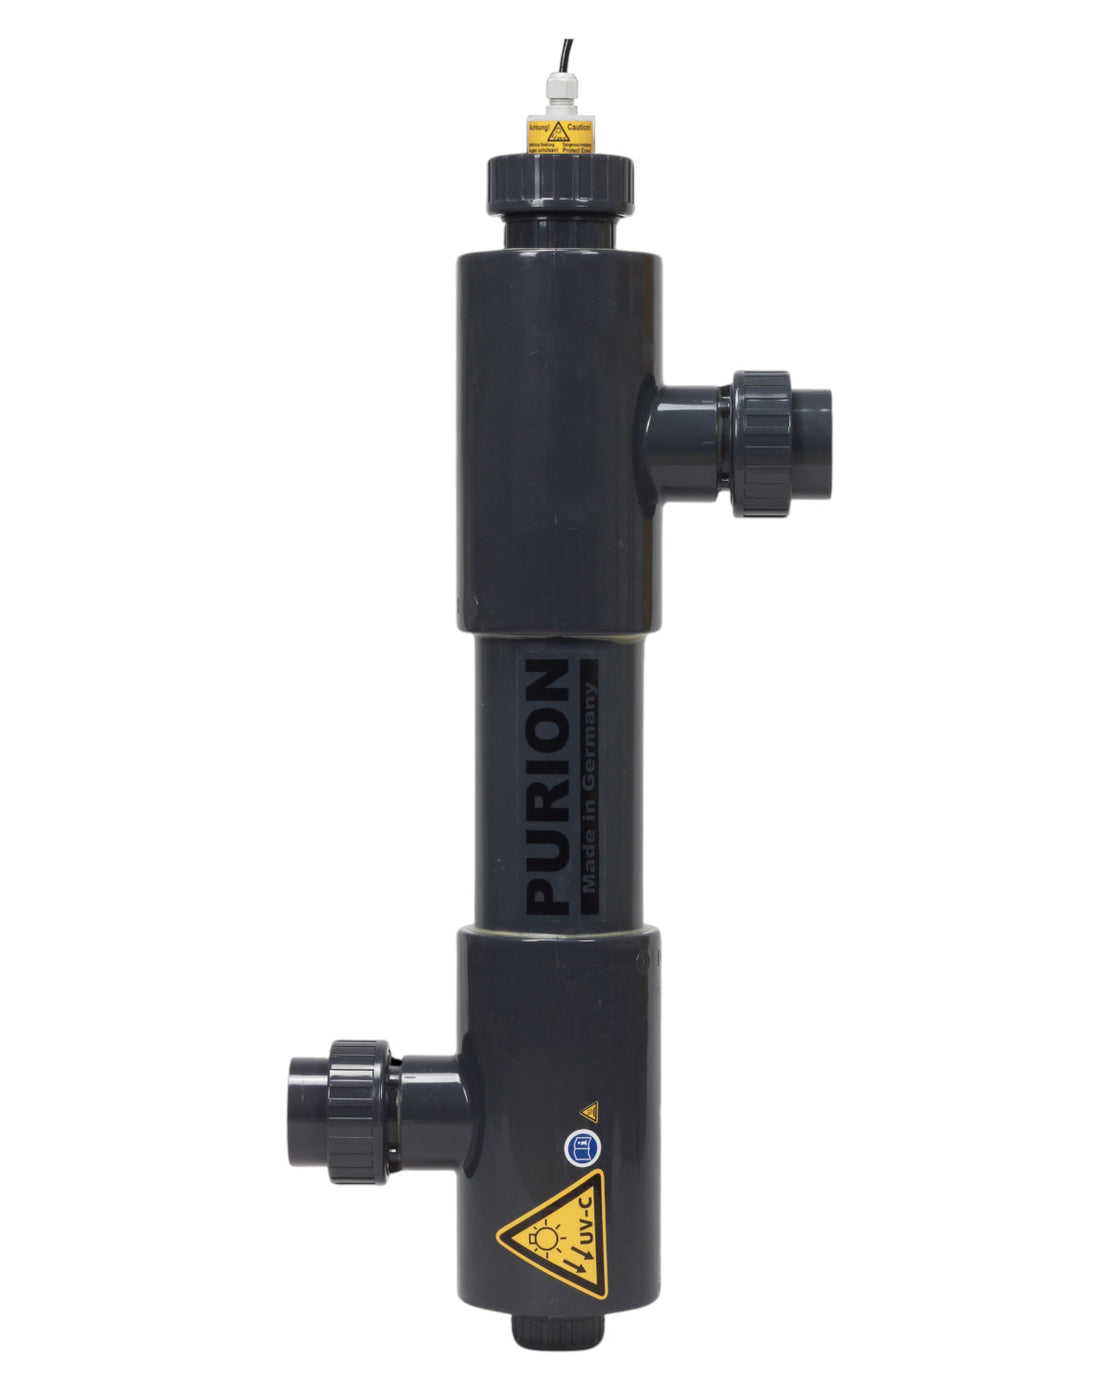 Ein schwarz-gelbes PURION 2001 PVC-U OTC Plus-Ventil für Salzwasserpool mit einem gelben Pfeil darauf, verwendet für Reinigung und UV-C-Desinfektion.